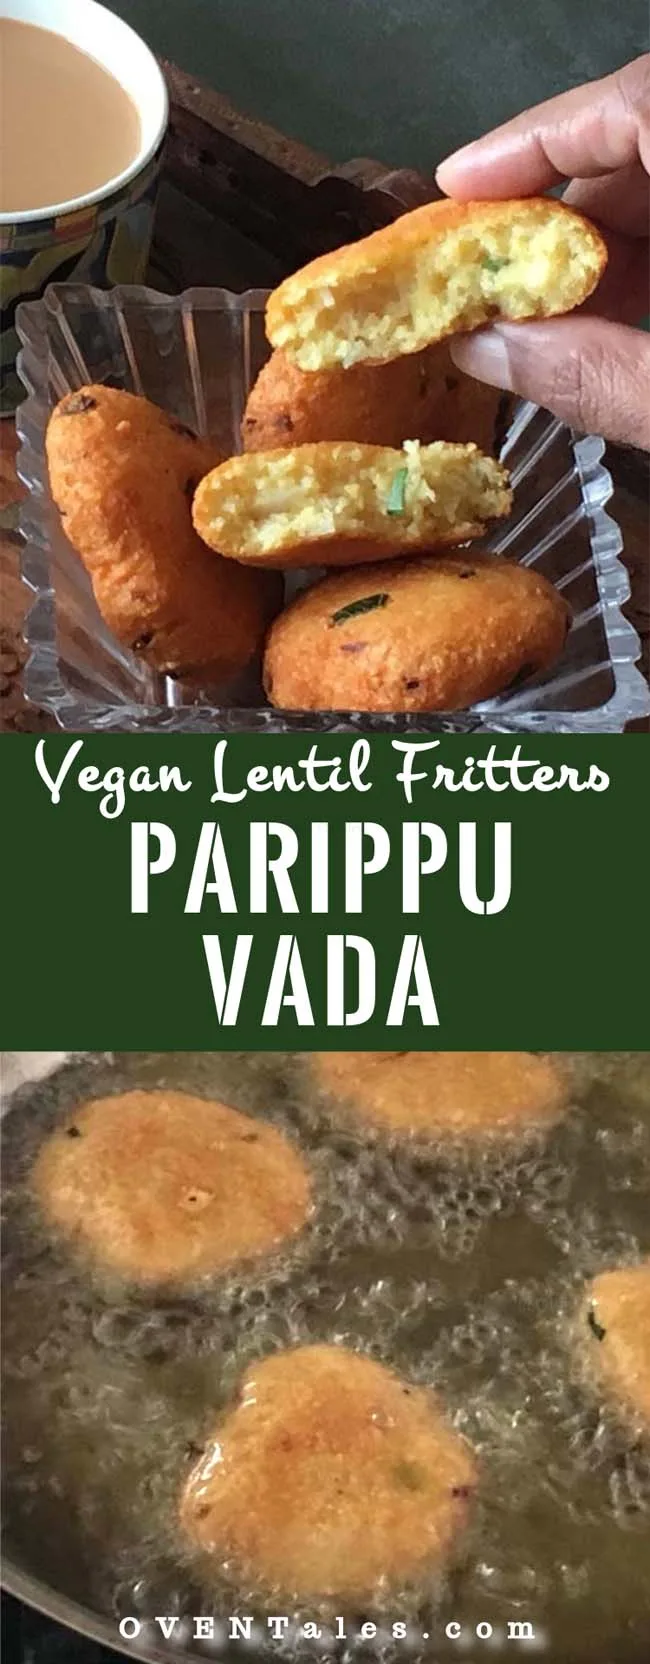 Vegan lentil fritters - Parippu Vada